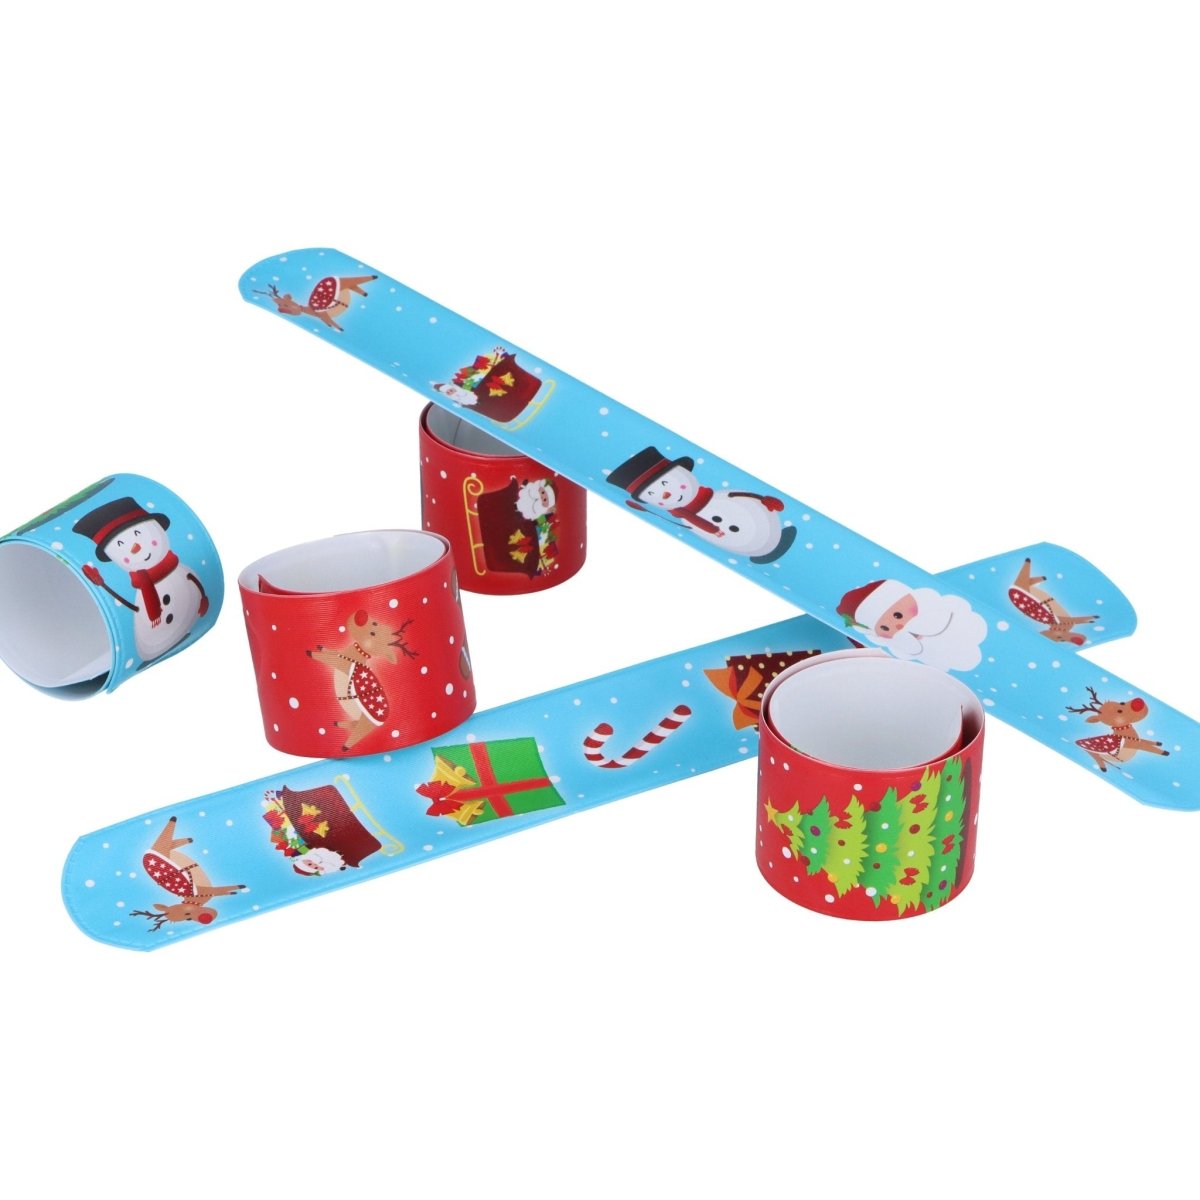 Christmas Snap Bracelets - Kids Party Craft